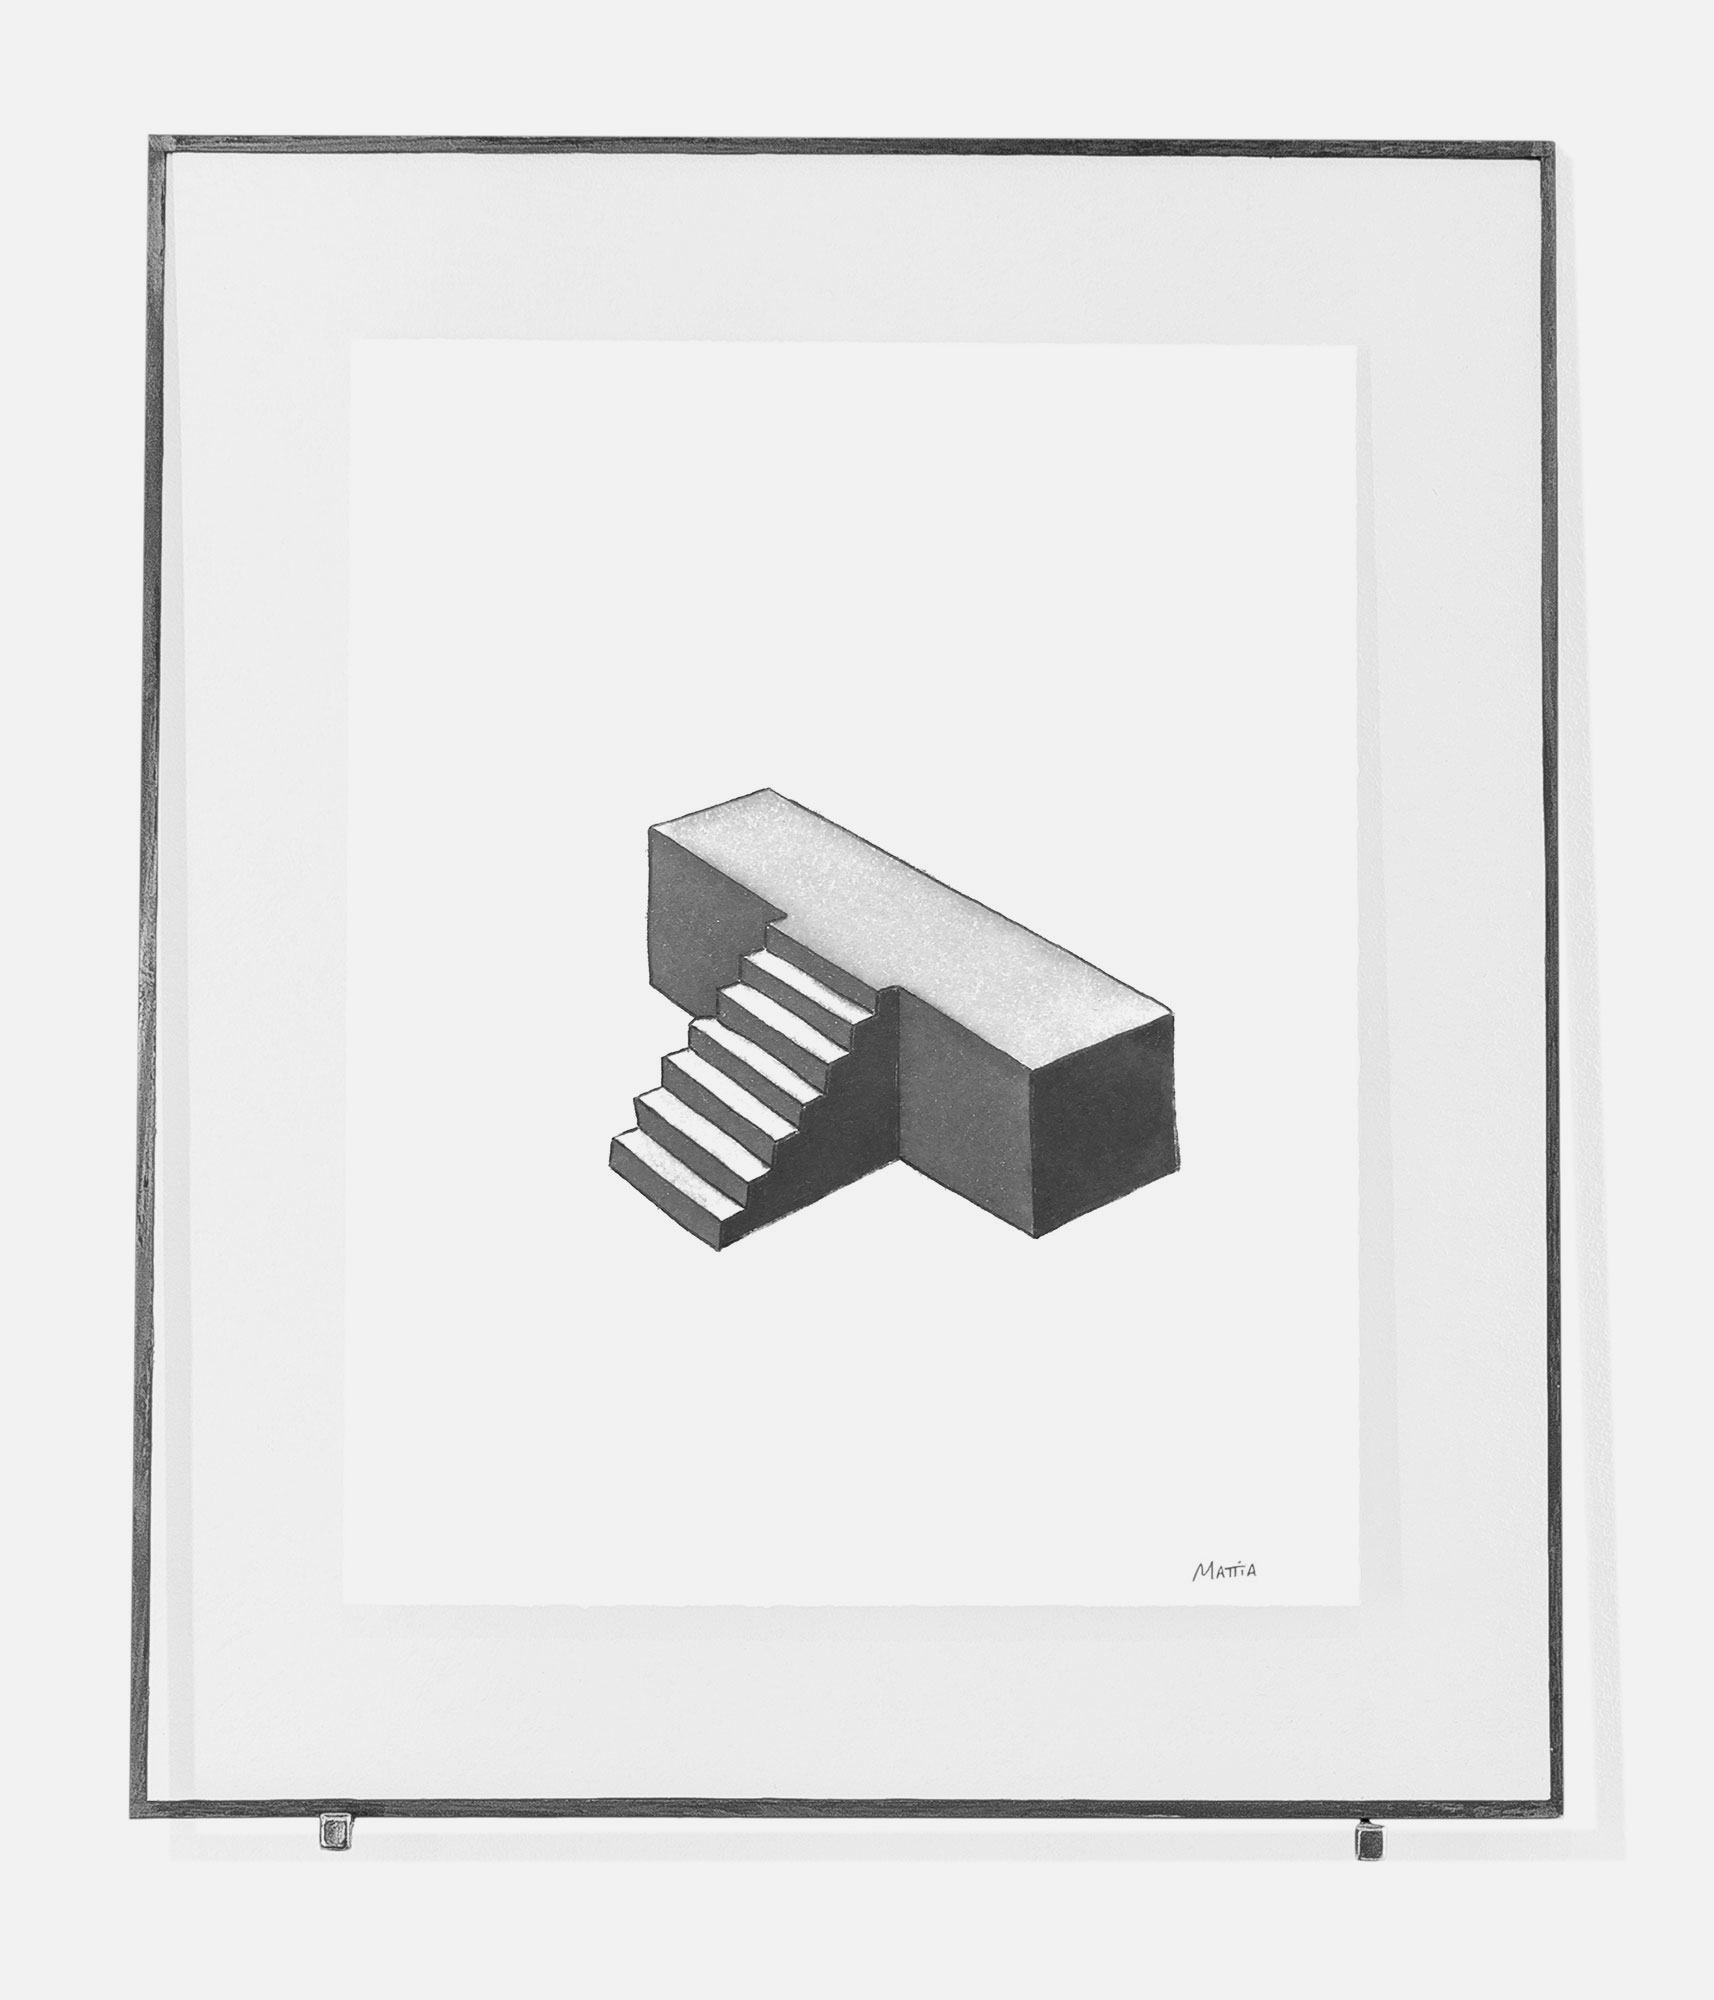 mattia listowski art décoration architecture design dessin réversible encre feutre à alcool bic noir et blanc objet 0021 estrade série escalier oeuvre édition limitée signée paris bruxelles 2021